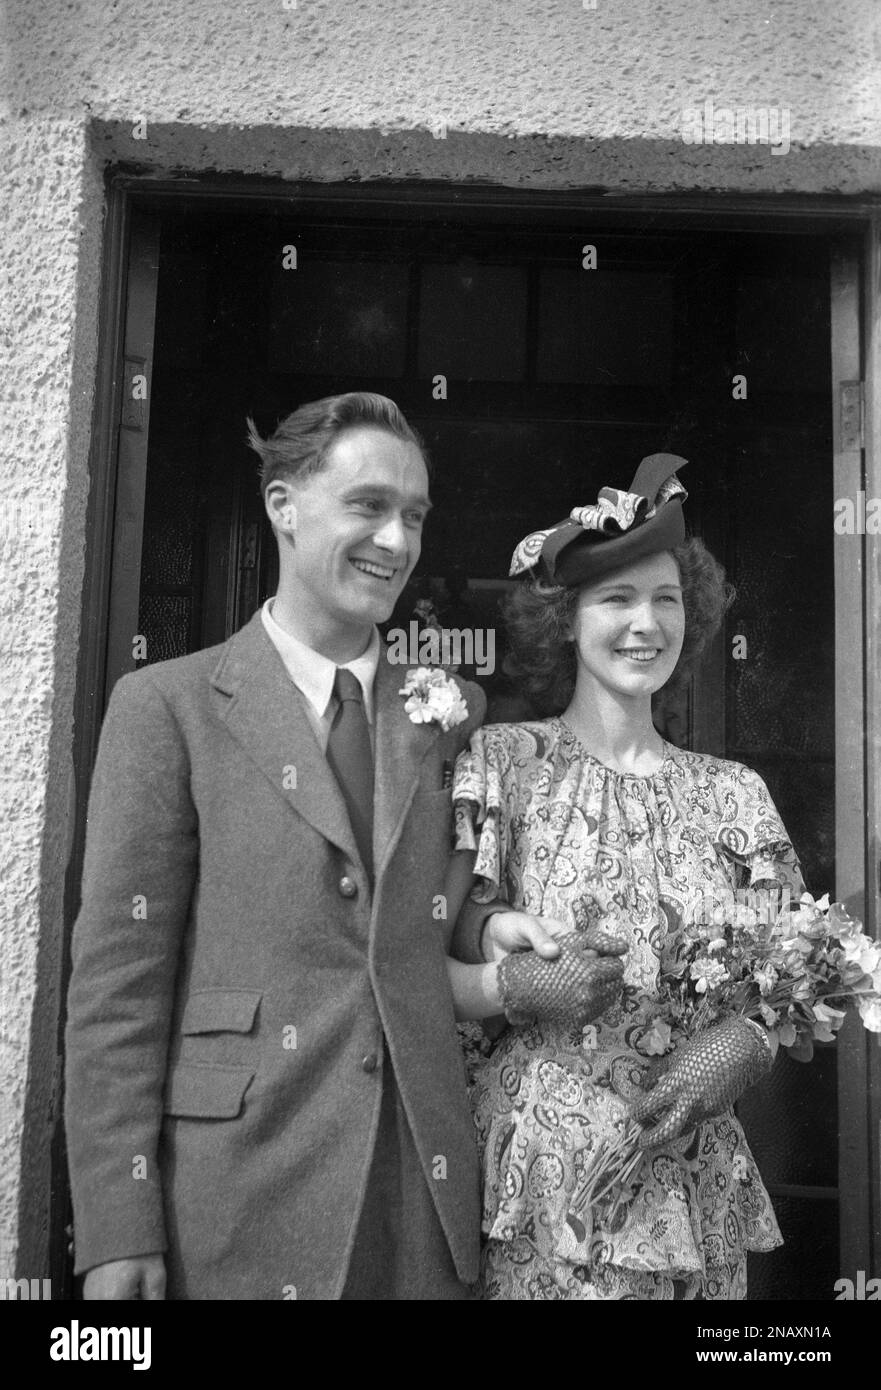 1950s, historique, un couple récemment marié, debout ensemble dans une porte, souriant, heureux et tenant les mains, la femme portant des gants de dentelle, robe florale et joli chapeau, Angleterre, Royaume-Uni. Banque D'Images